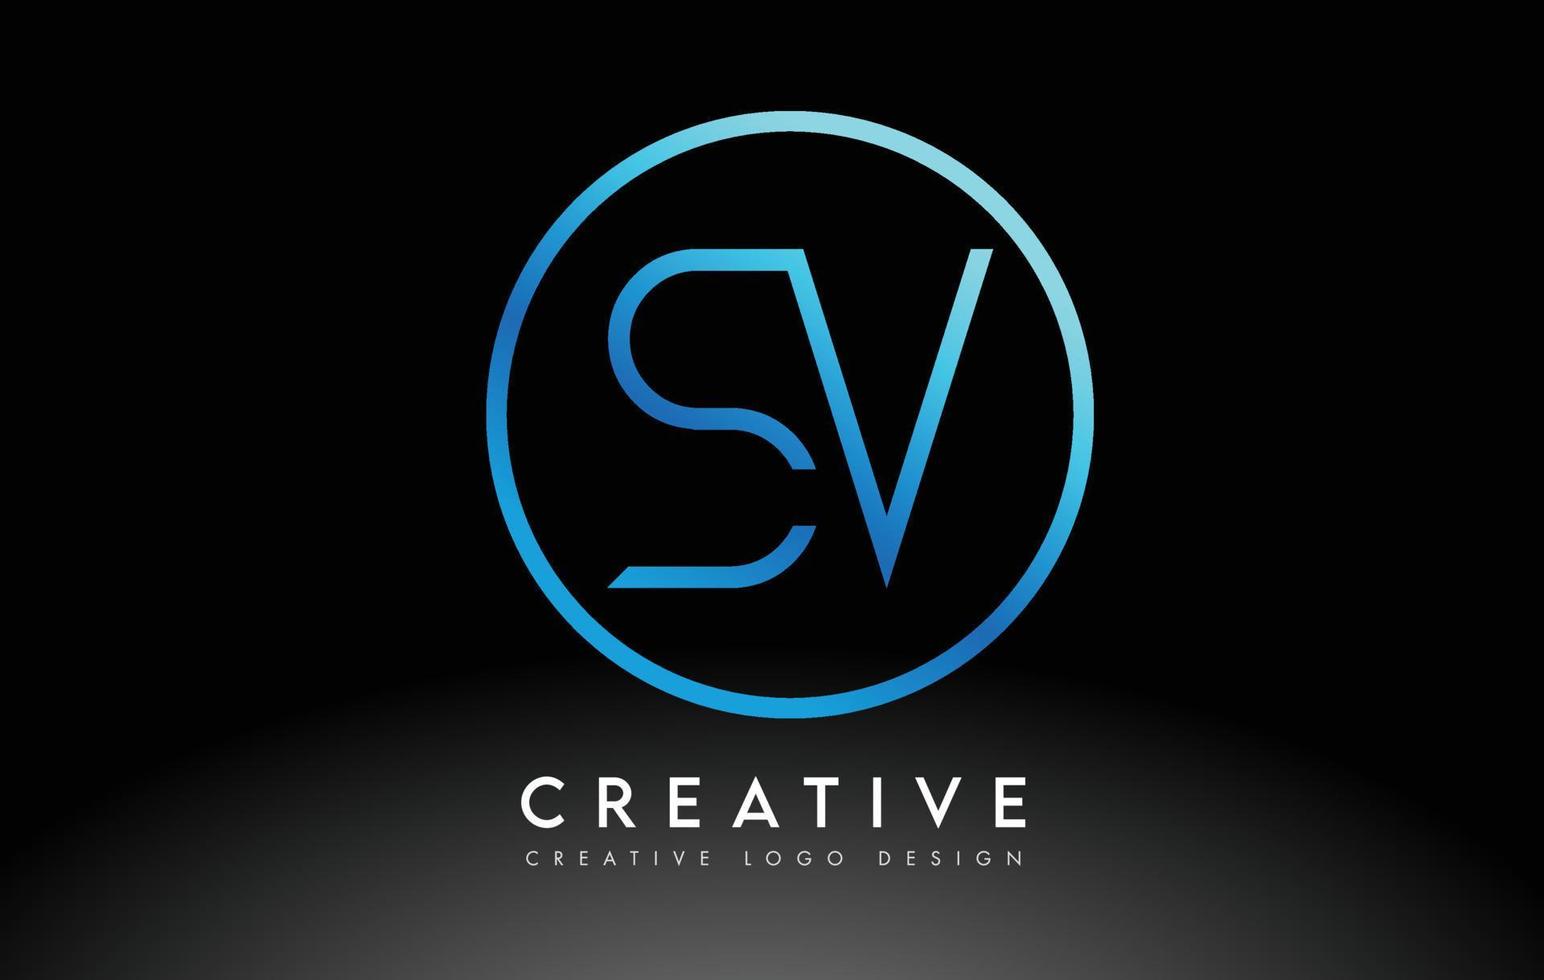 diseño de logotipo de letras sv azul neón delgado. concepto creativo simple carta limpia. vector